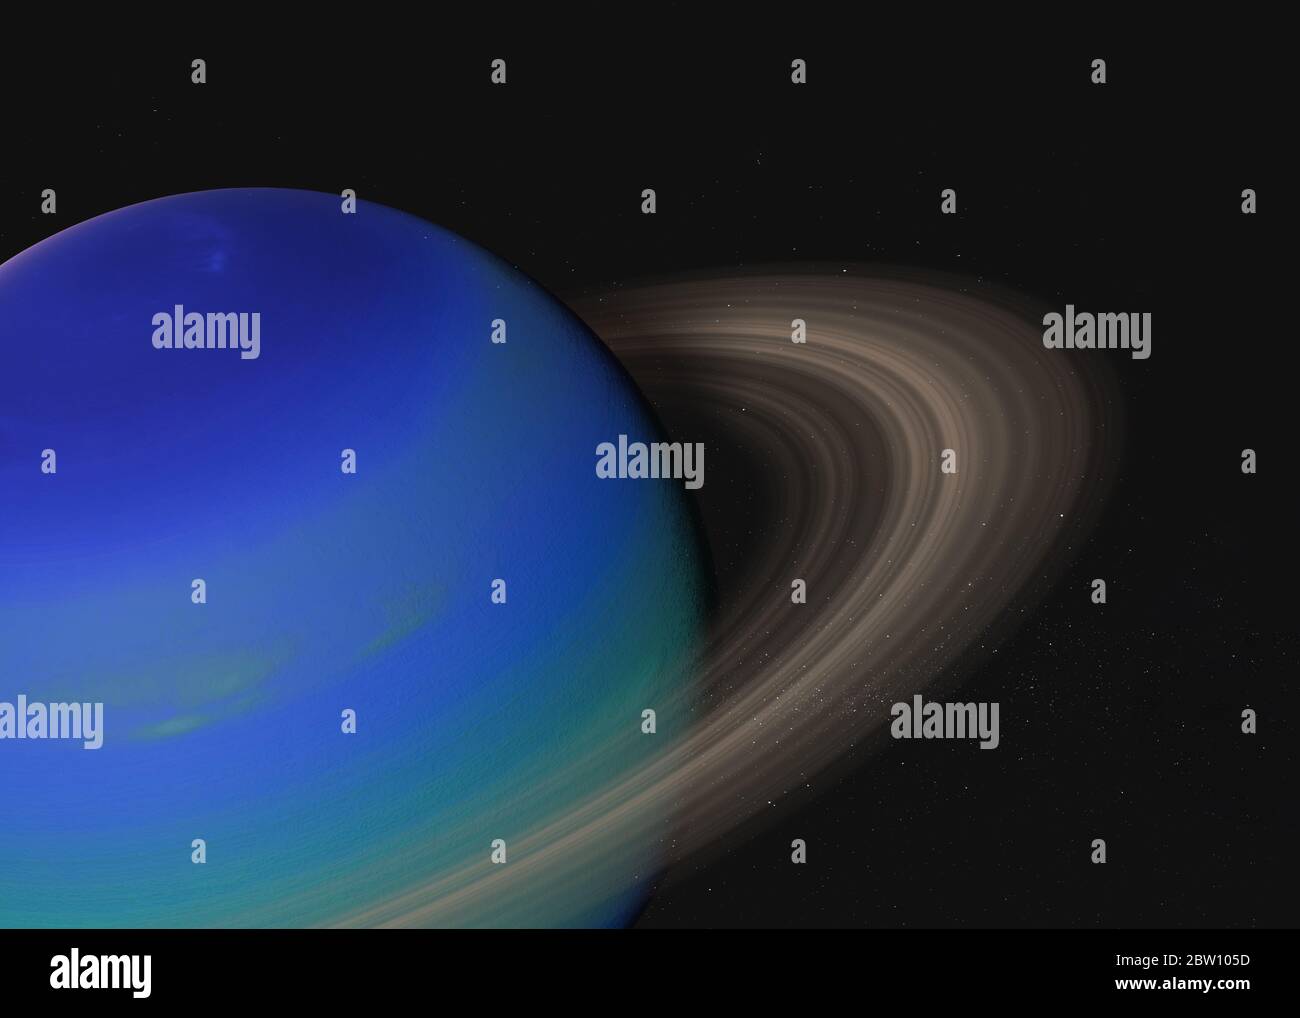 Fantastischer Exoplanet mit Meeresoberfläche und Ring im Weltraum. 3D-Darstellung. Elemente dieses Bildes, die von der NASA bereitgestellt wurden. Stockfoto